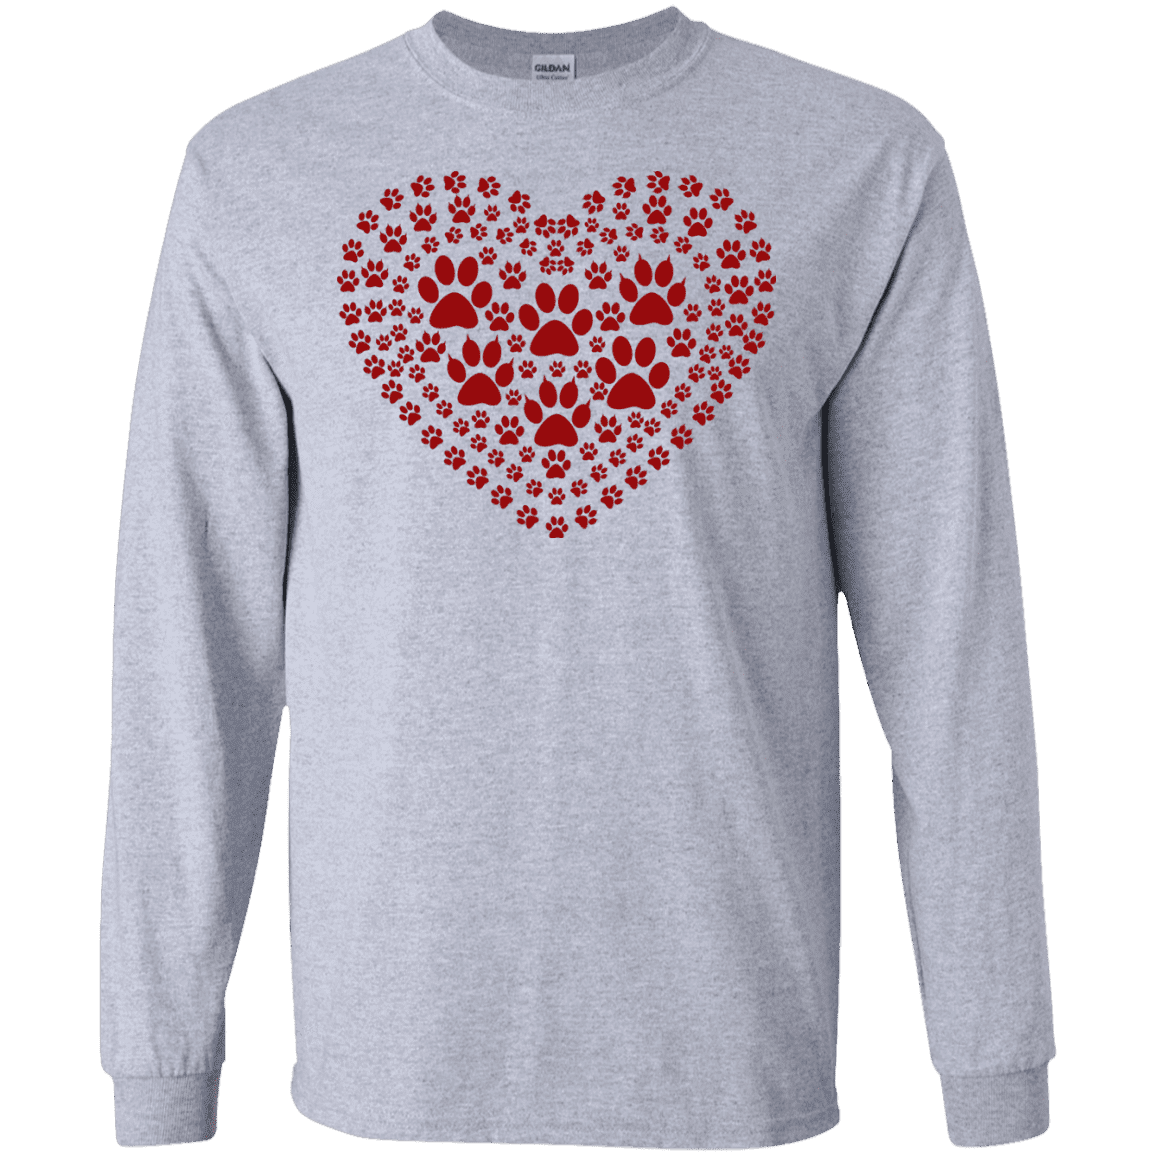 Pawprint Heart - Long Sleeve T Shirt.